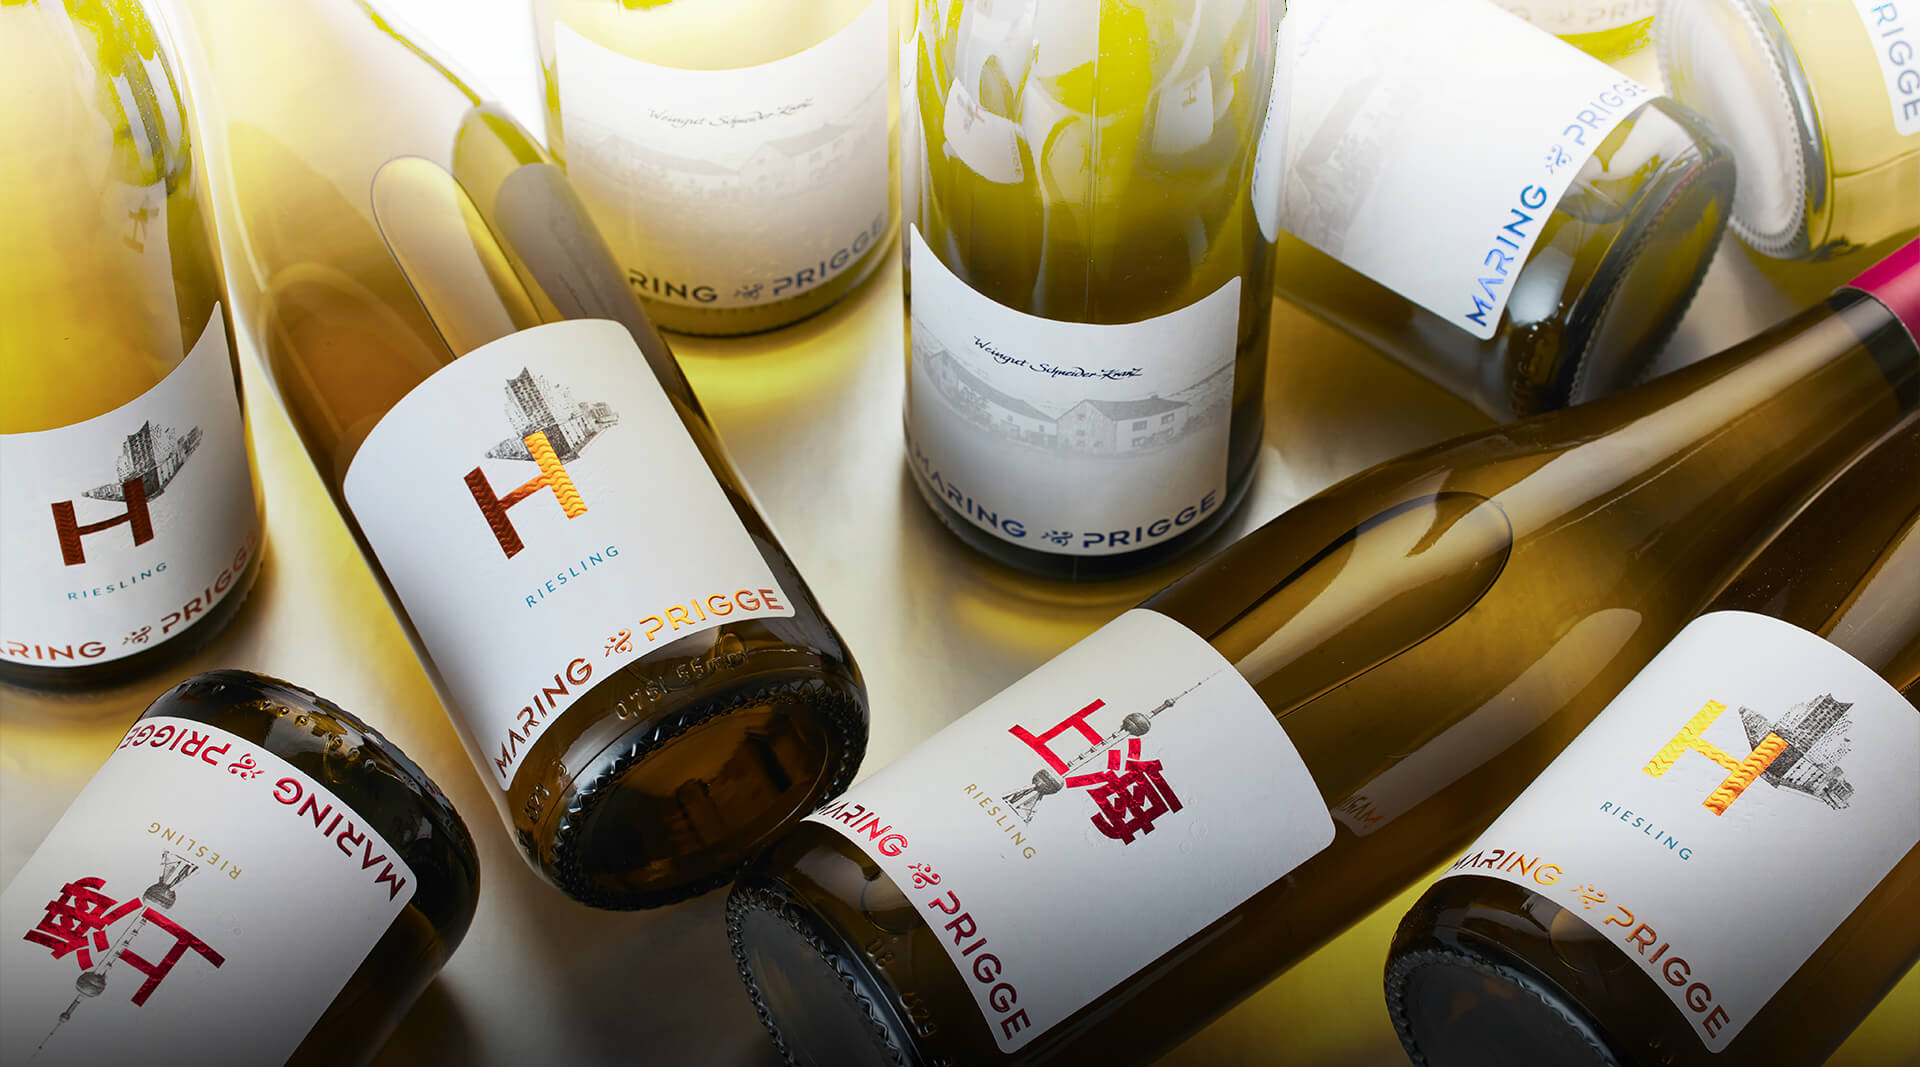 Maring-Prigge verschiendene Weinflaschen liegend und stehend. Shanghau und Hamburg Wein deutlich erkennbar